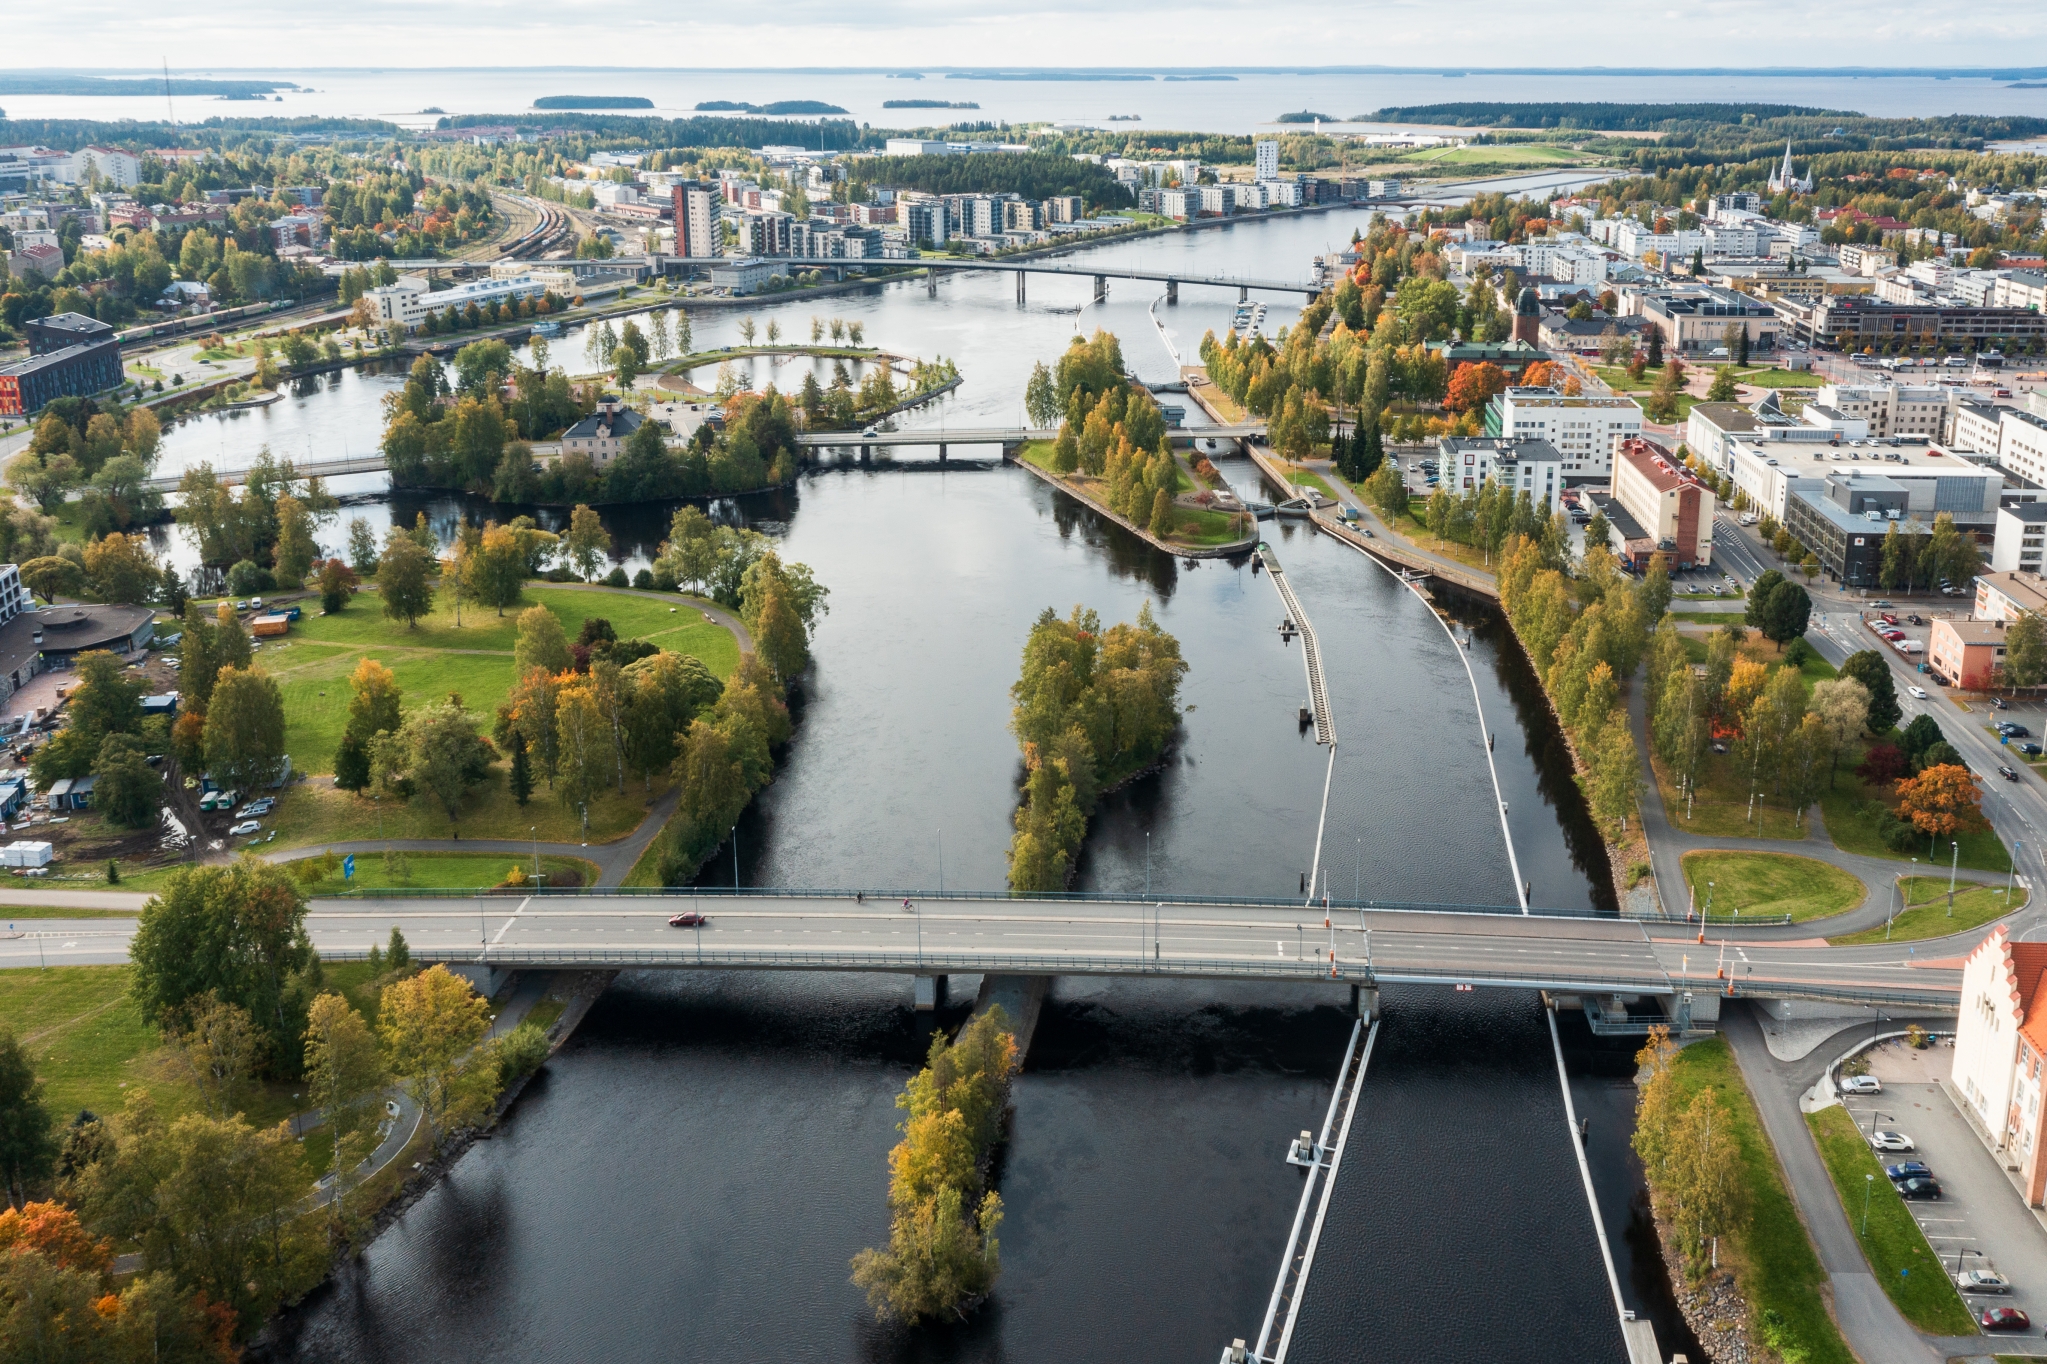 Katso upea video Joensuun yltä: Pielisjoen yli pääsee Joensuun  kaupunkialueella seitsemän sillan kautta - kaikki sillat kiertävä lenkki on  kahdeksan kilometrin mittainen maisemaelämys